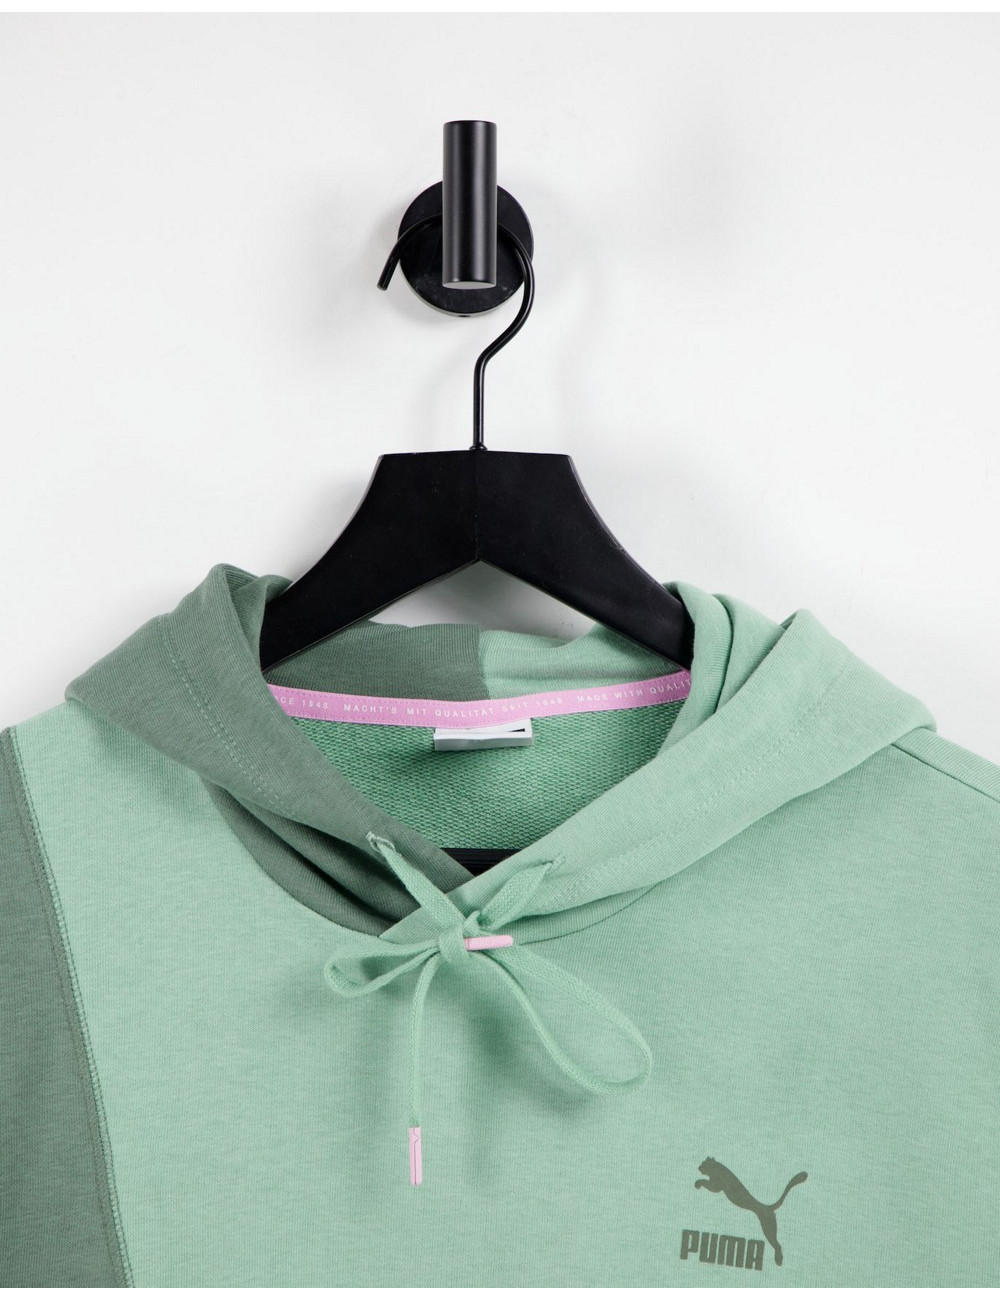 Puma convey hoodie in green...